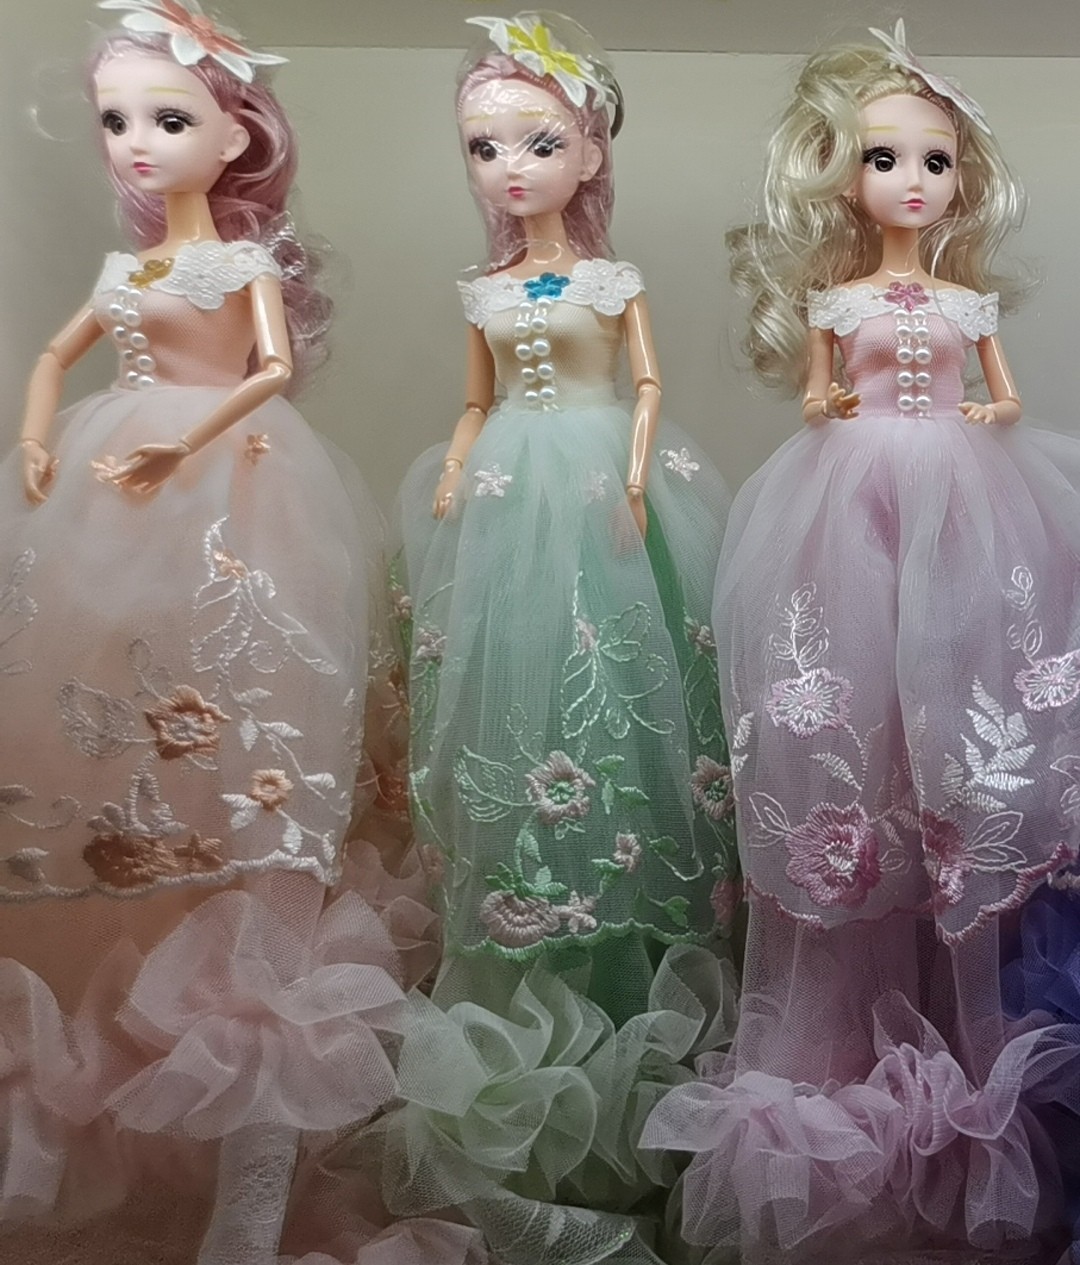 义乌市悦欣玩具厂生产销售各种芭比娃娃系列产品